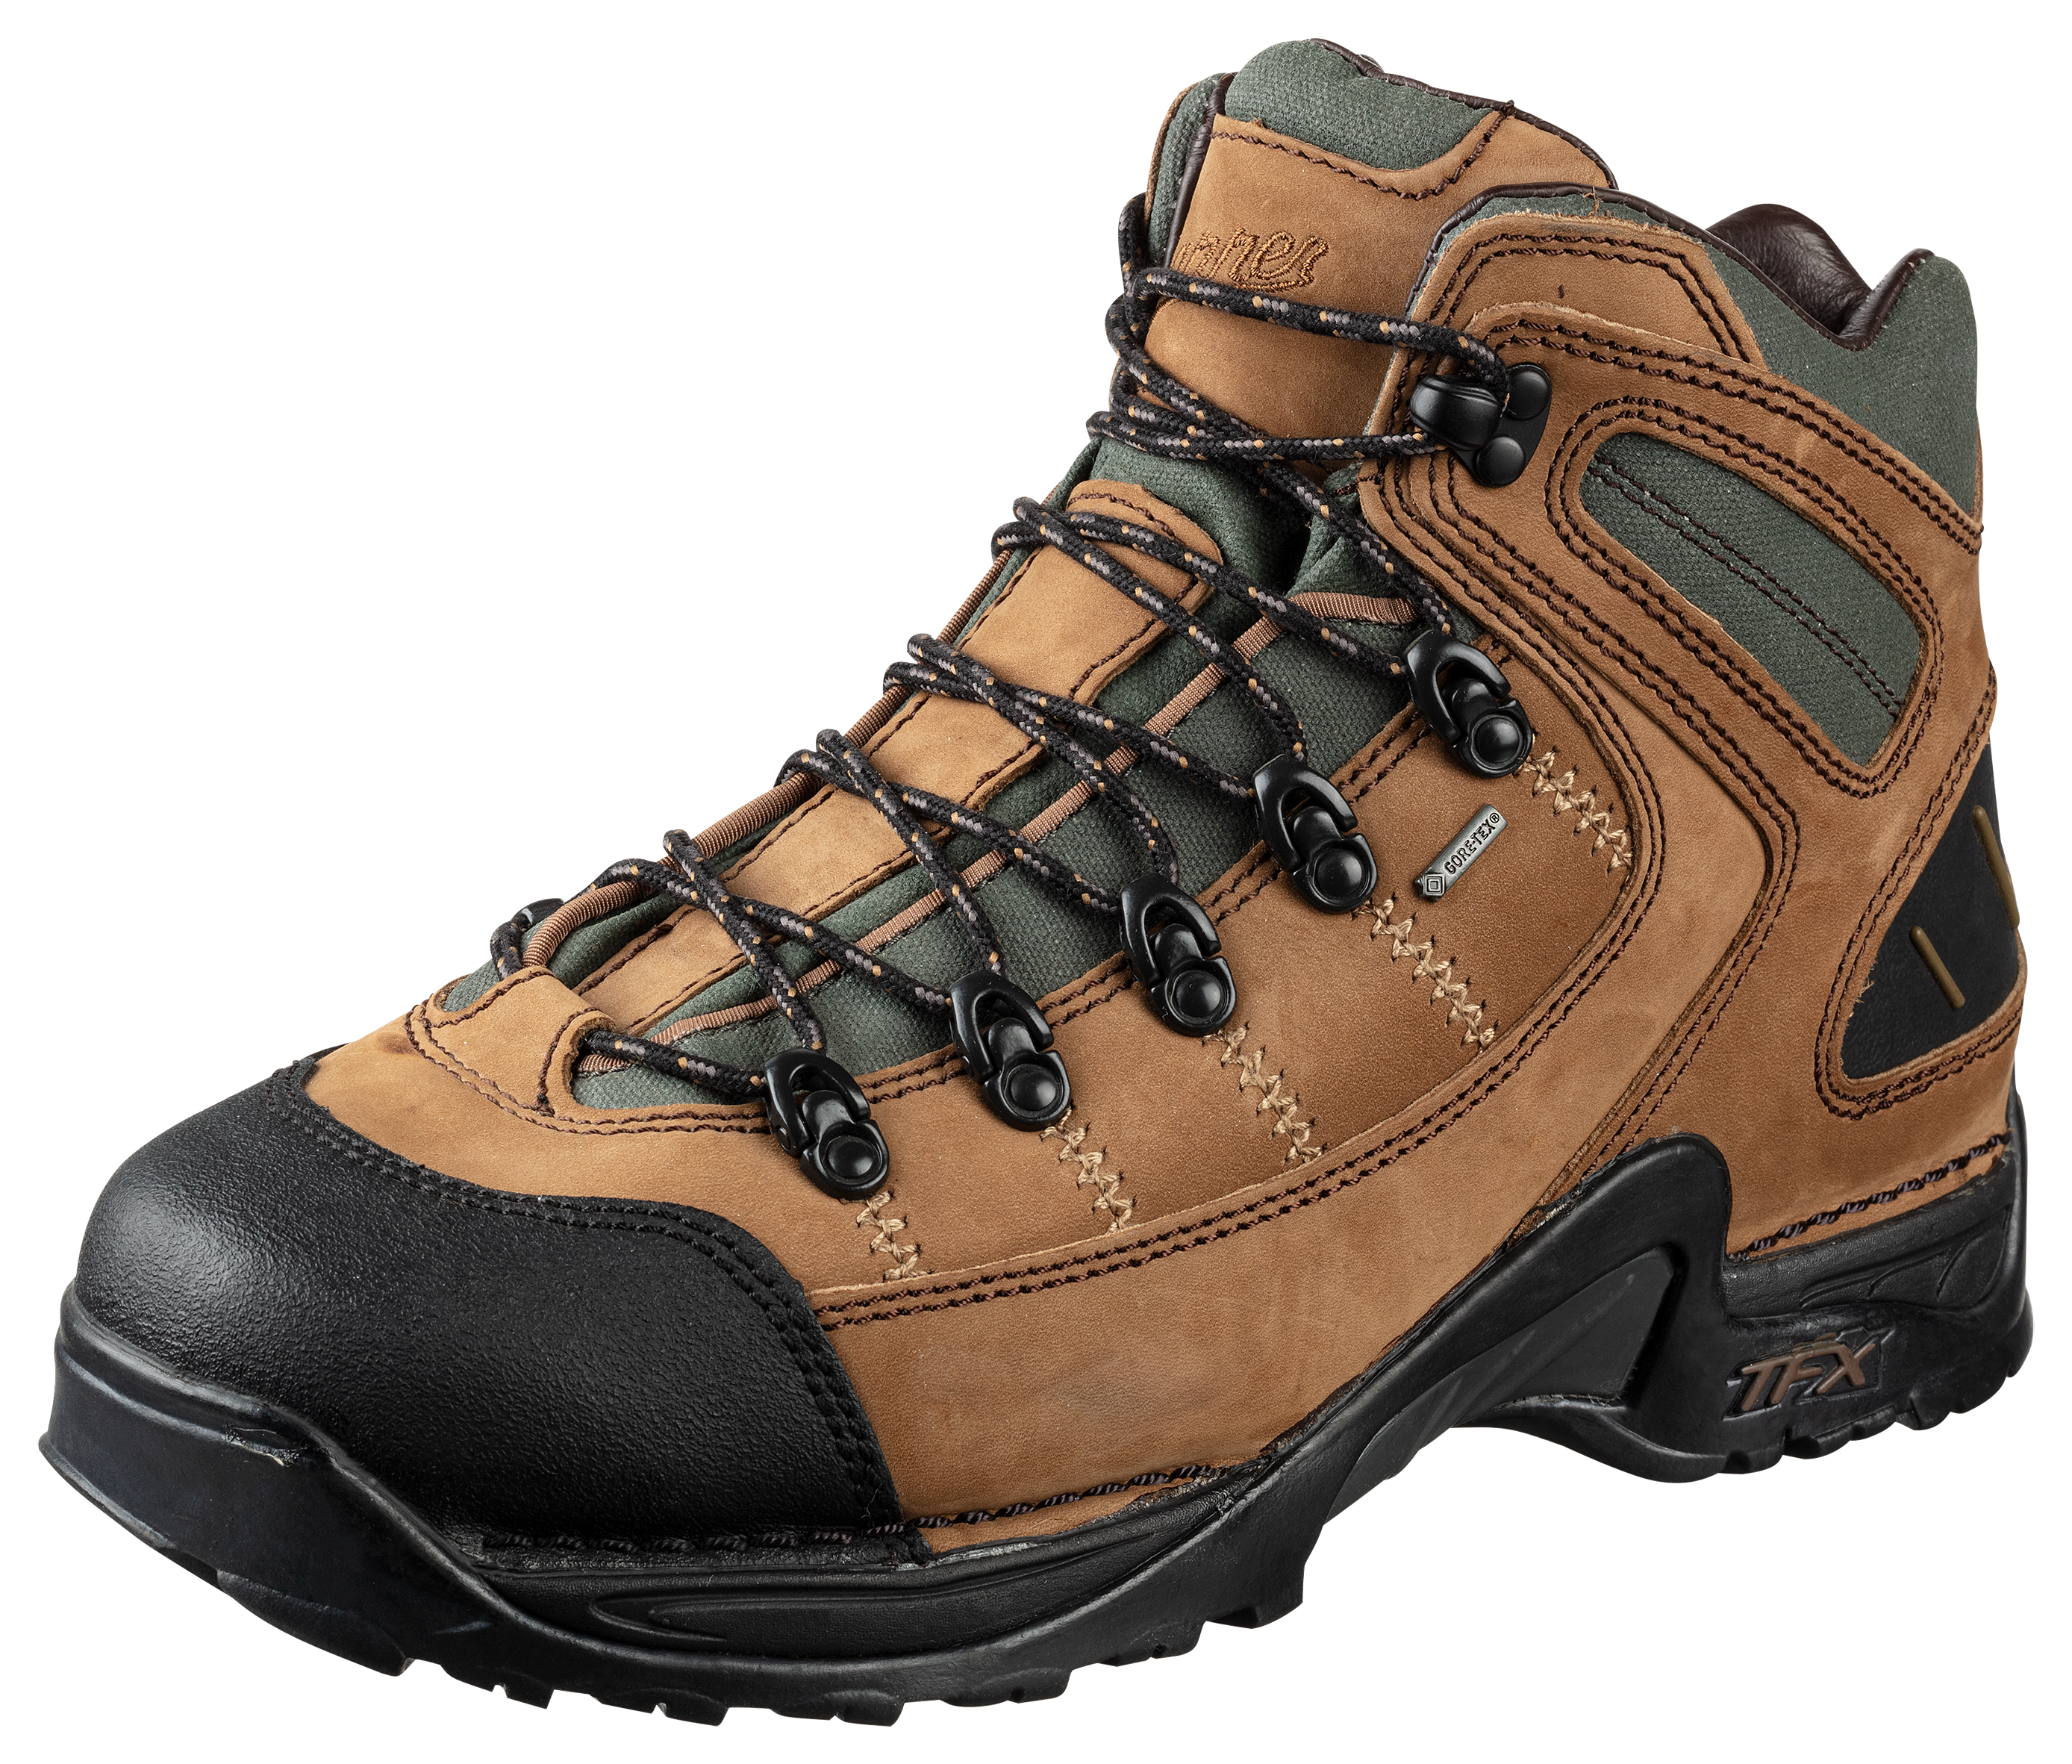 Danner 453 GORE-TEX Waterproof Hiking Boots for Men - Dark Tan - 14M